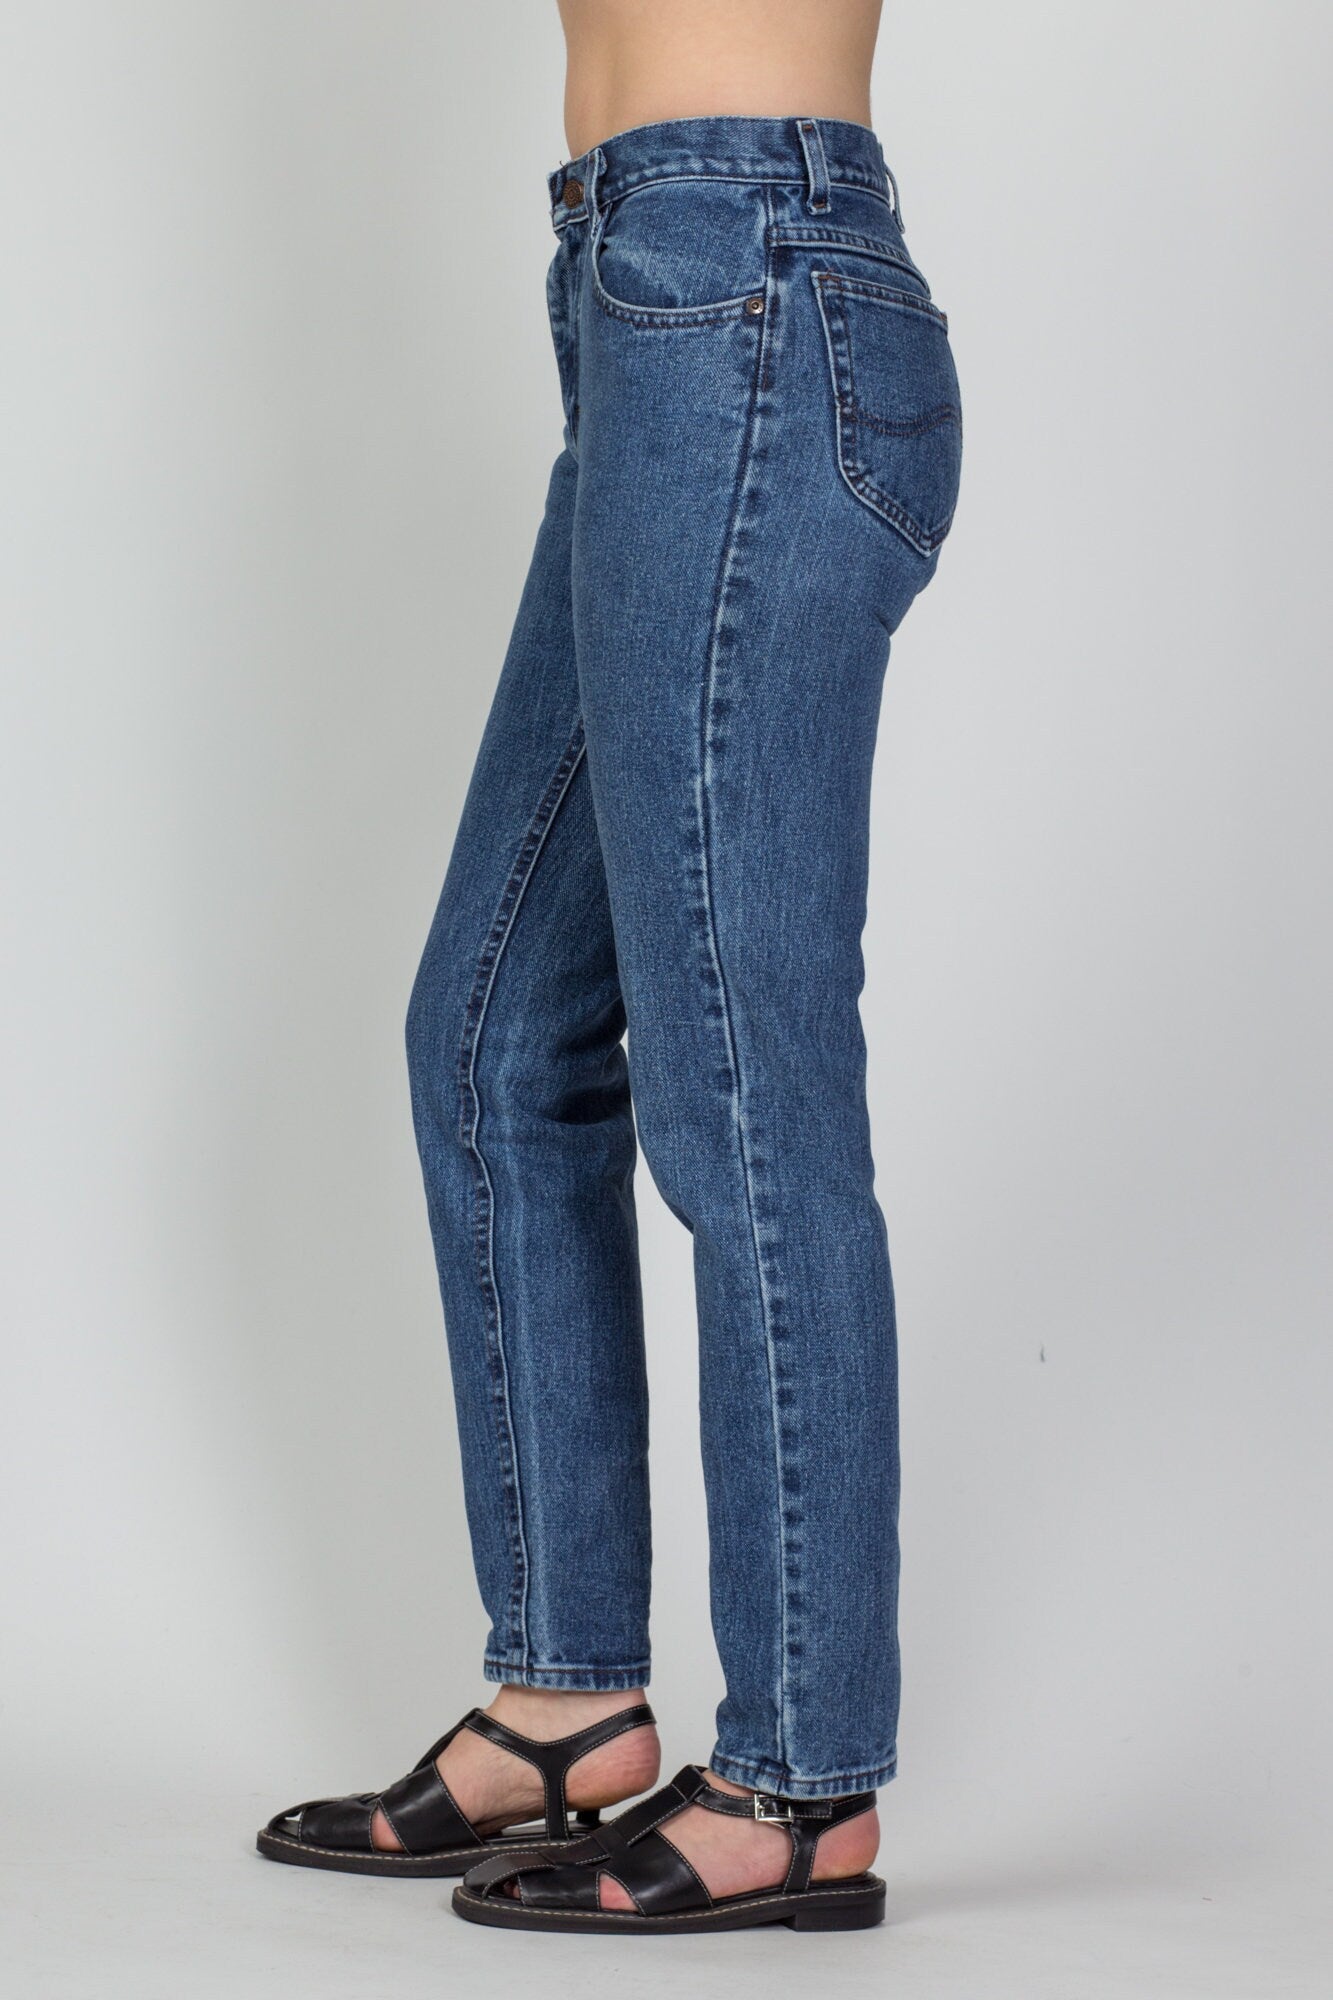 Vintage Lee Medium Wash High Waist Jeans - Petite Small, 26.5" 